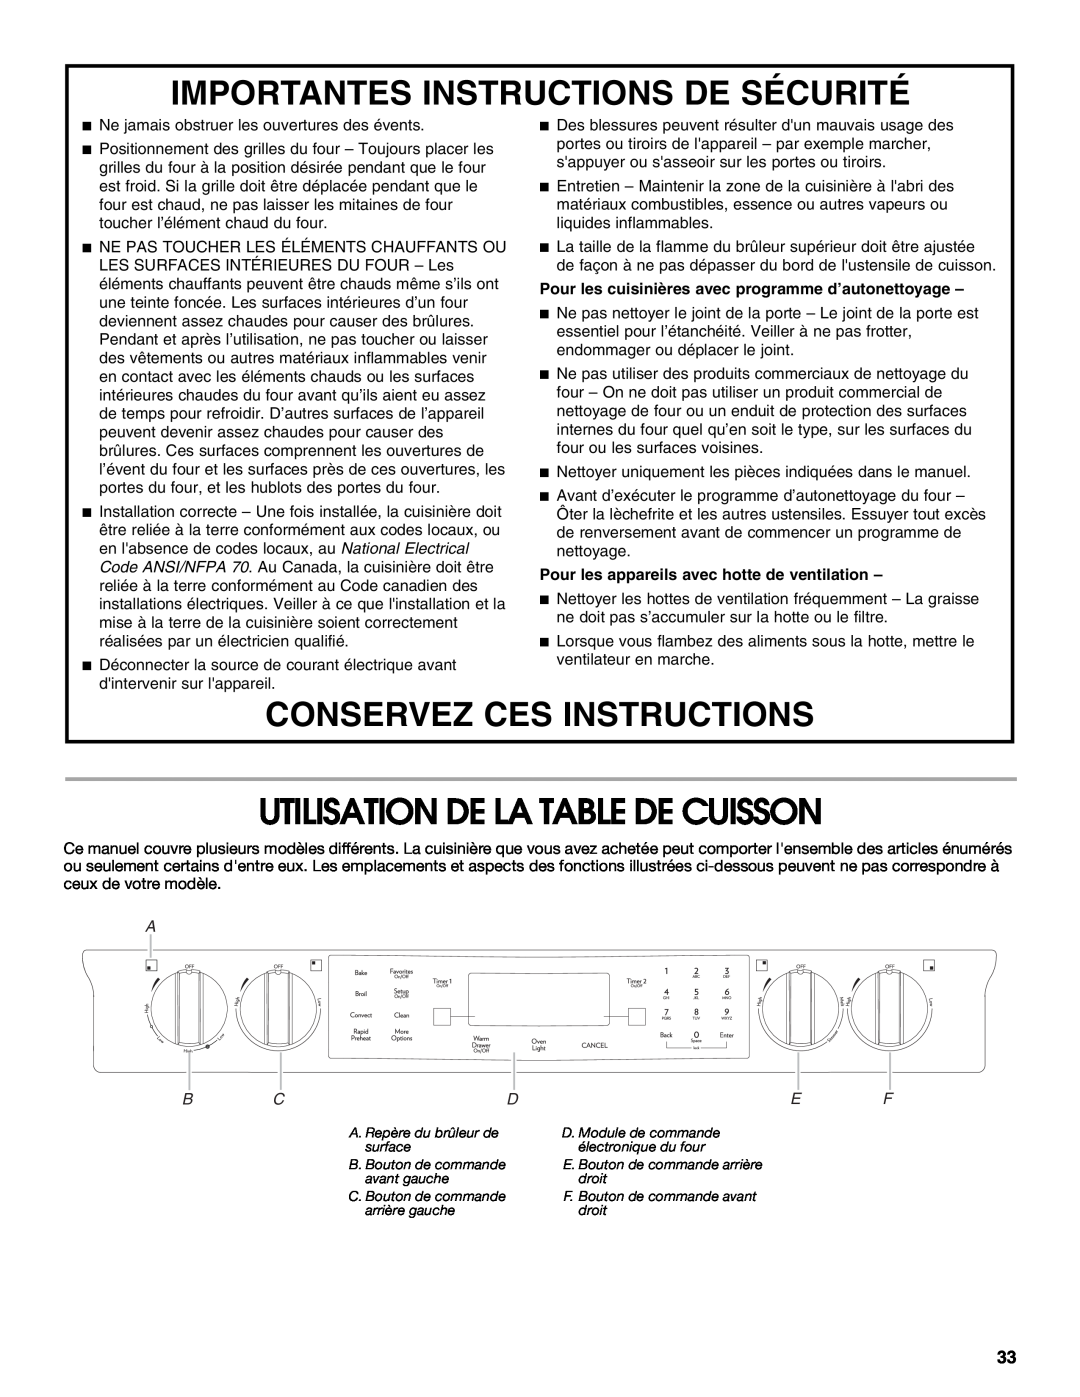 Jenn-Air JDS8850 Utilisation De La Table De Cuisson, Importantes Instructions De Sécurité, Conservez Ces Instructions 